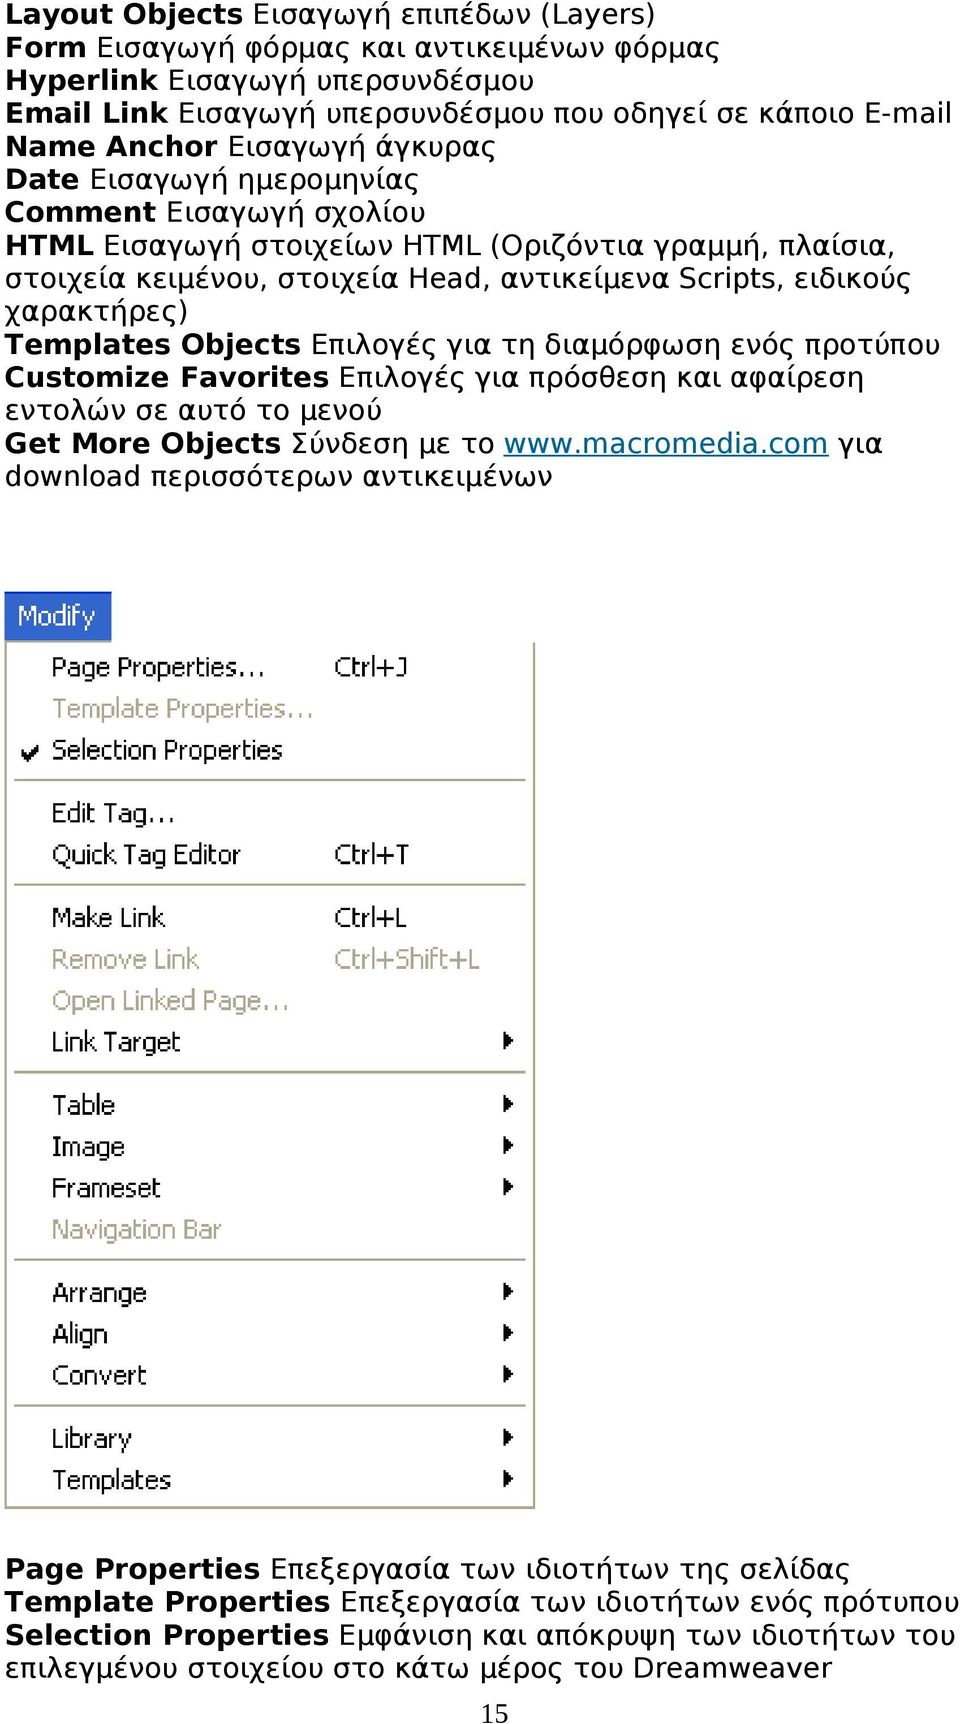 χαρακτήρες) Templates Objects Επιλογές για τη διαμόρφωση ενός προτύπου Customize Favorites Επιλογές για πρόσθεση και αφαίρεση εντολών σε αυτό το μενού Get More Objects Σύνδεση με το www.macromedia.